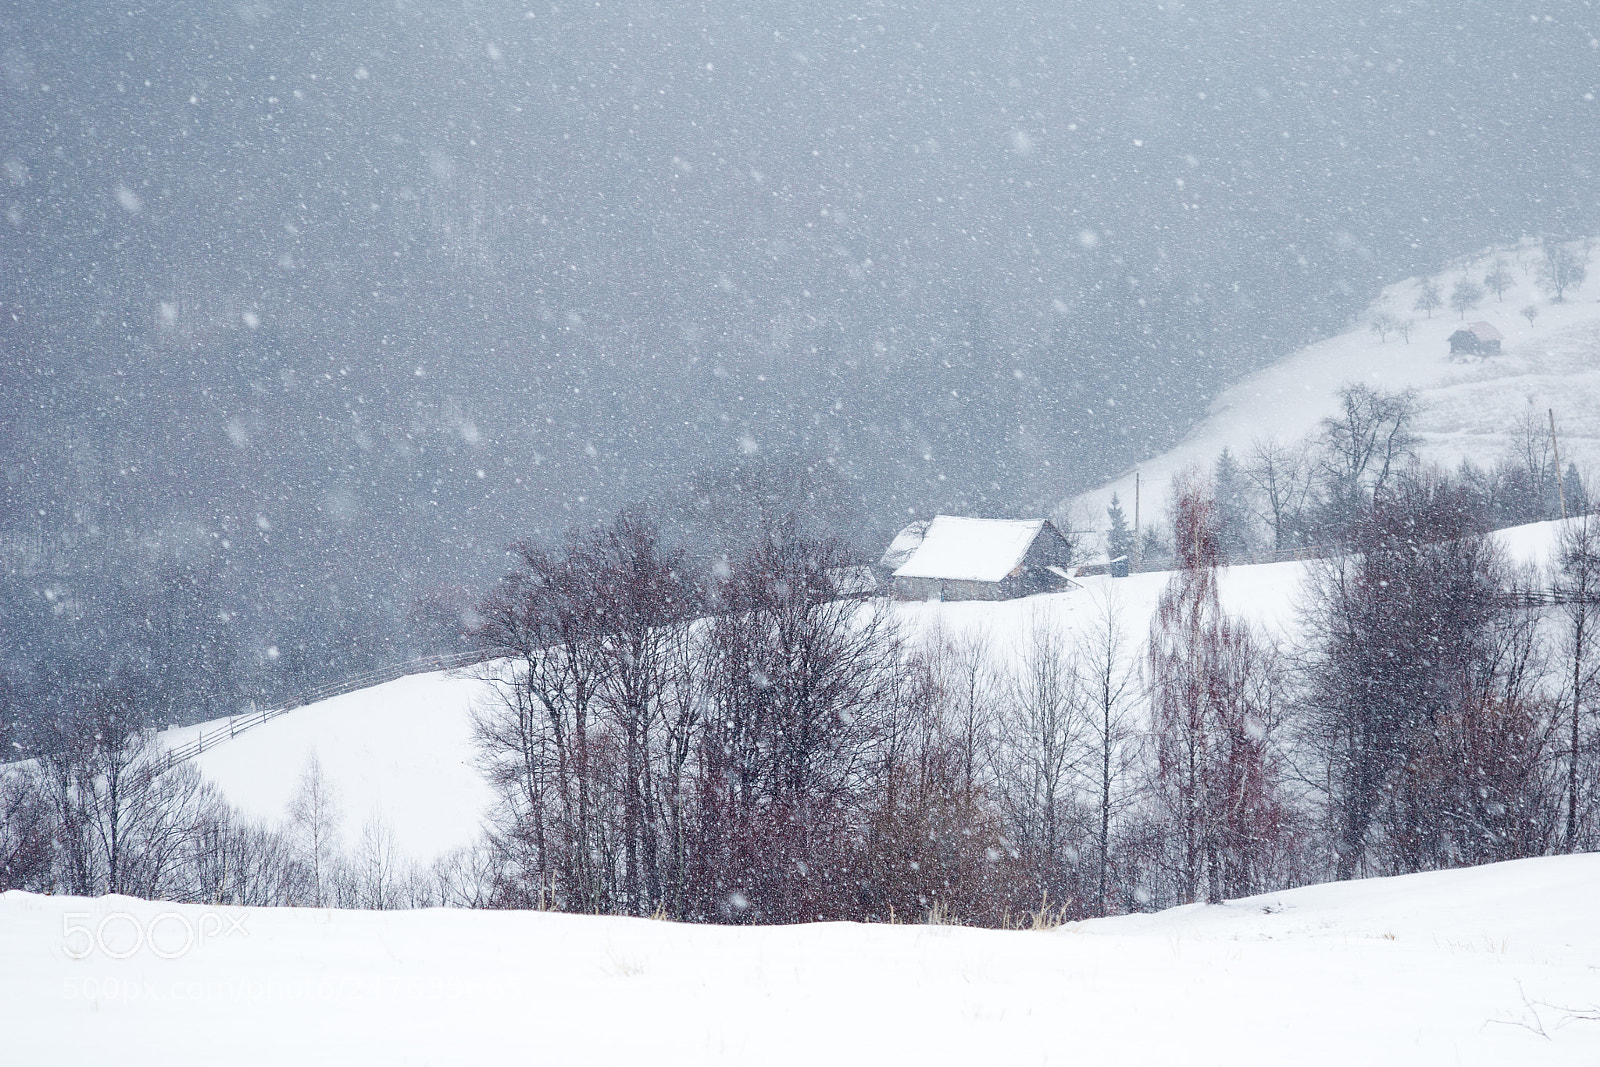 Canon EOS 6D sample photo. Snowy silence photography